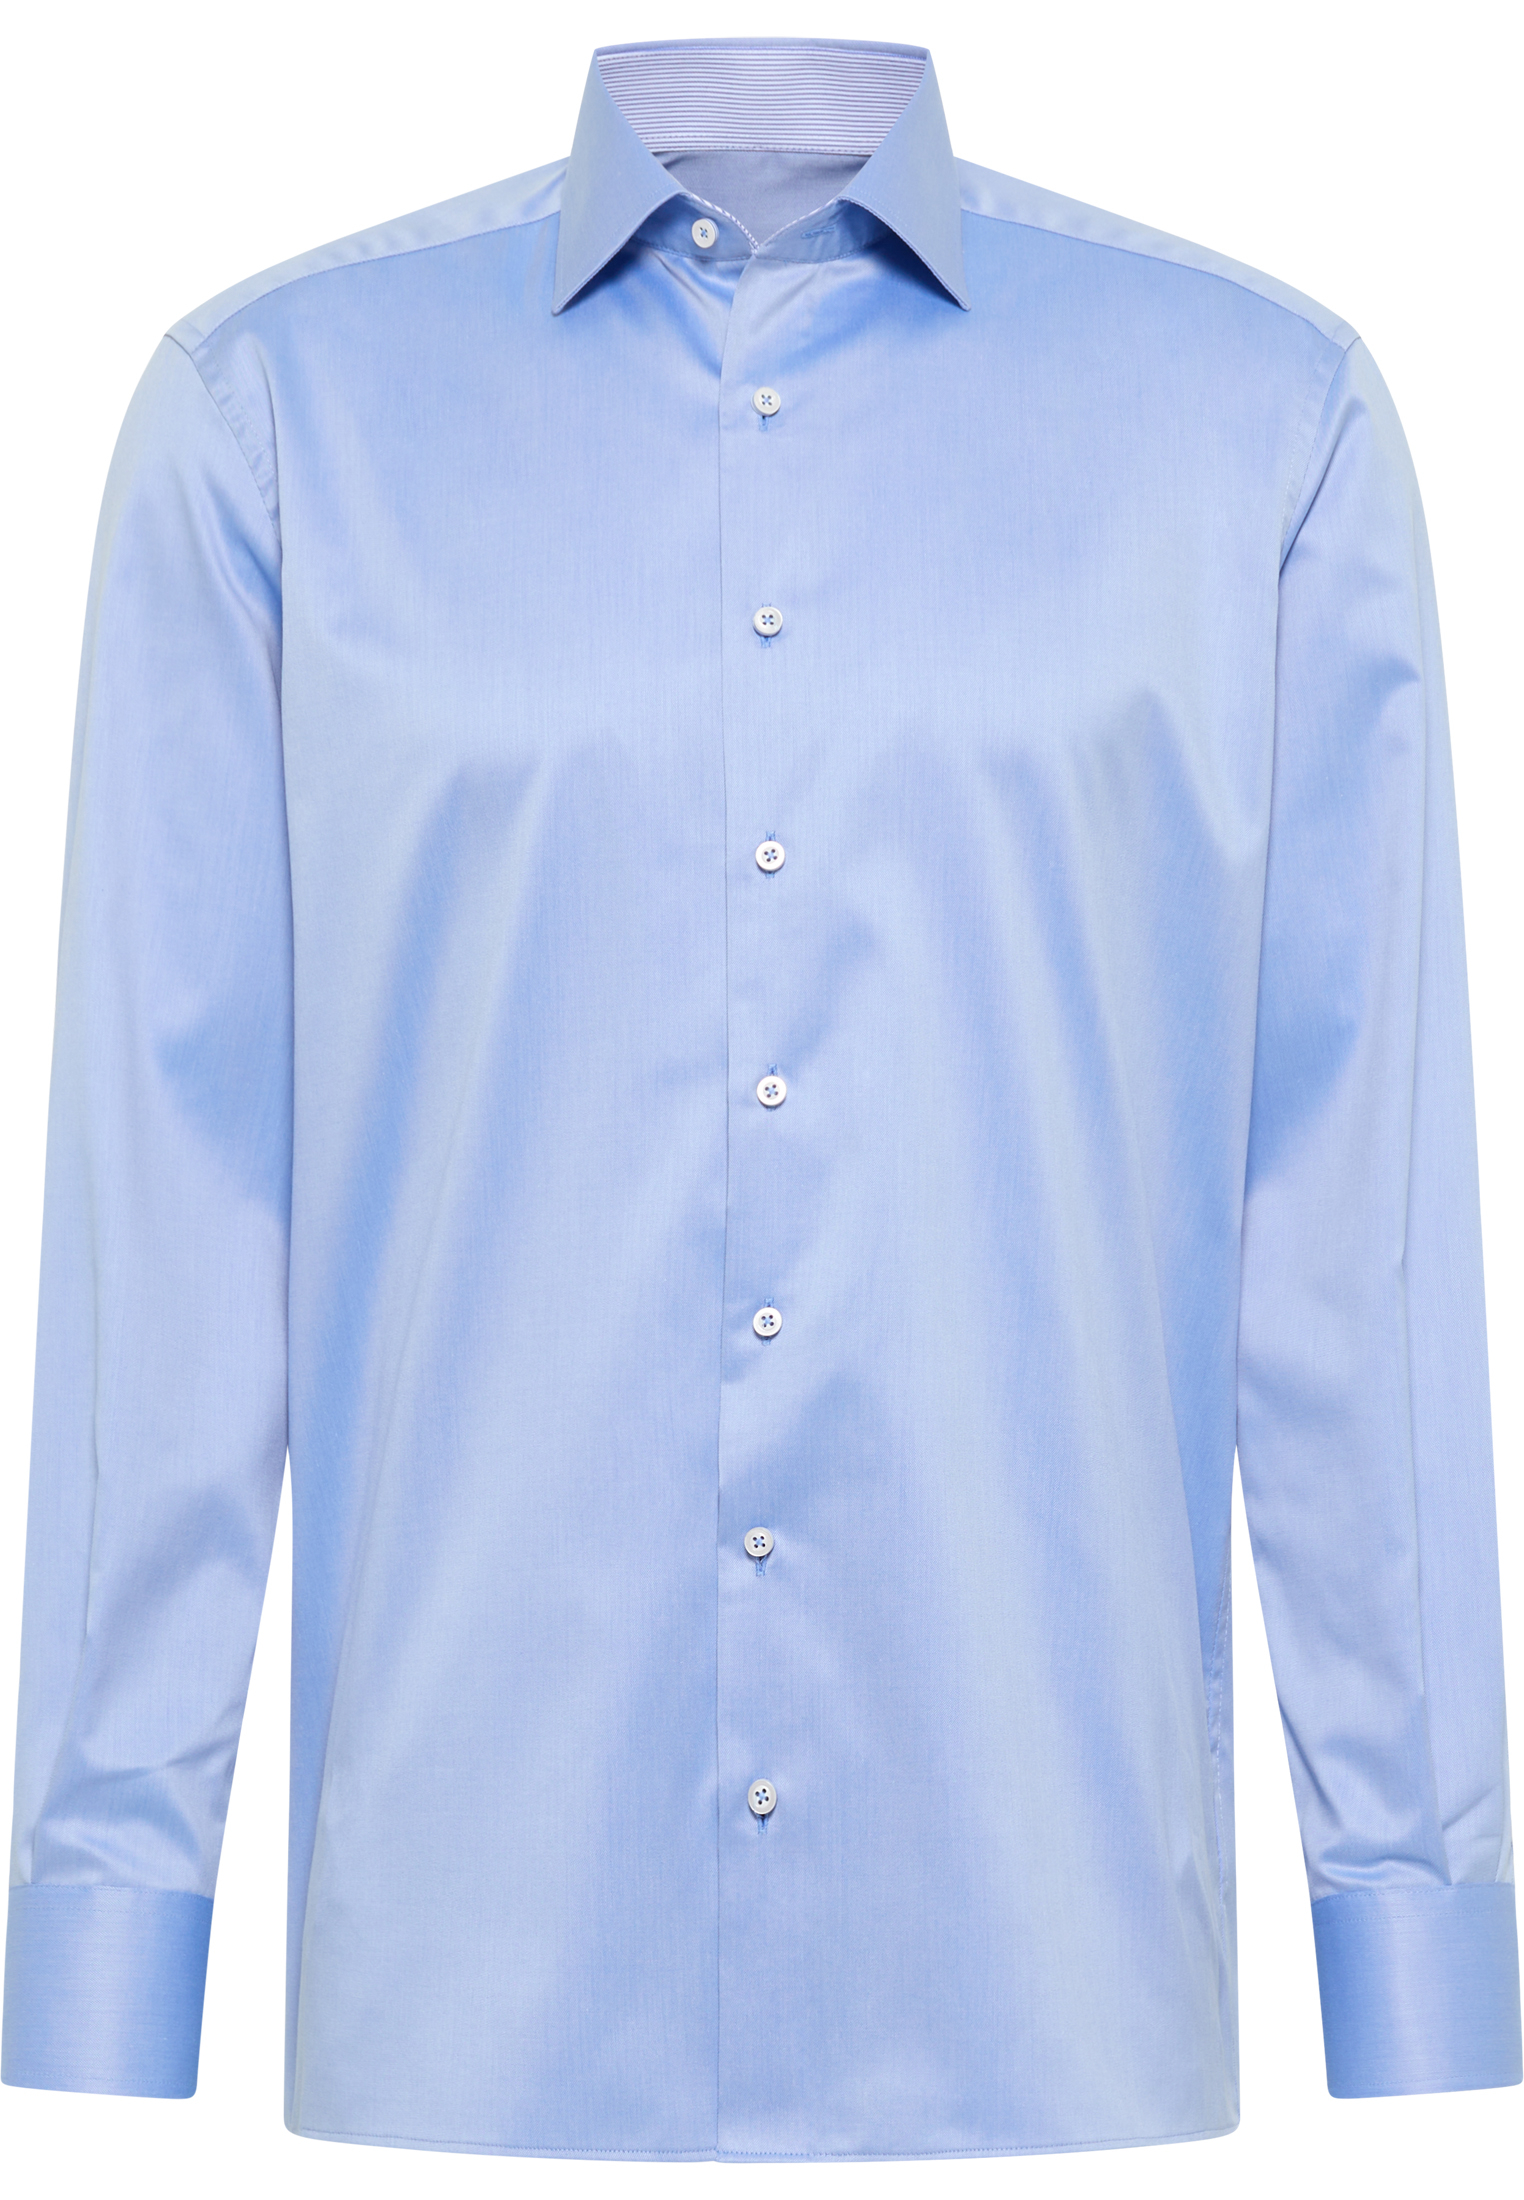 COMFORT FIT Luxury Shirt in medium blue plain